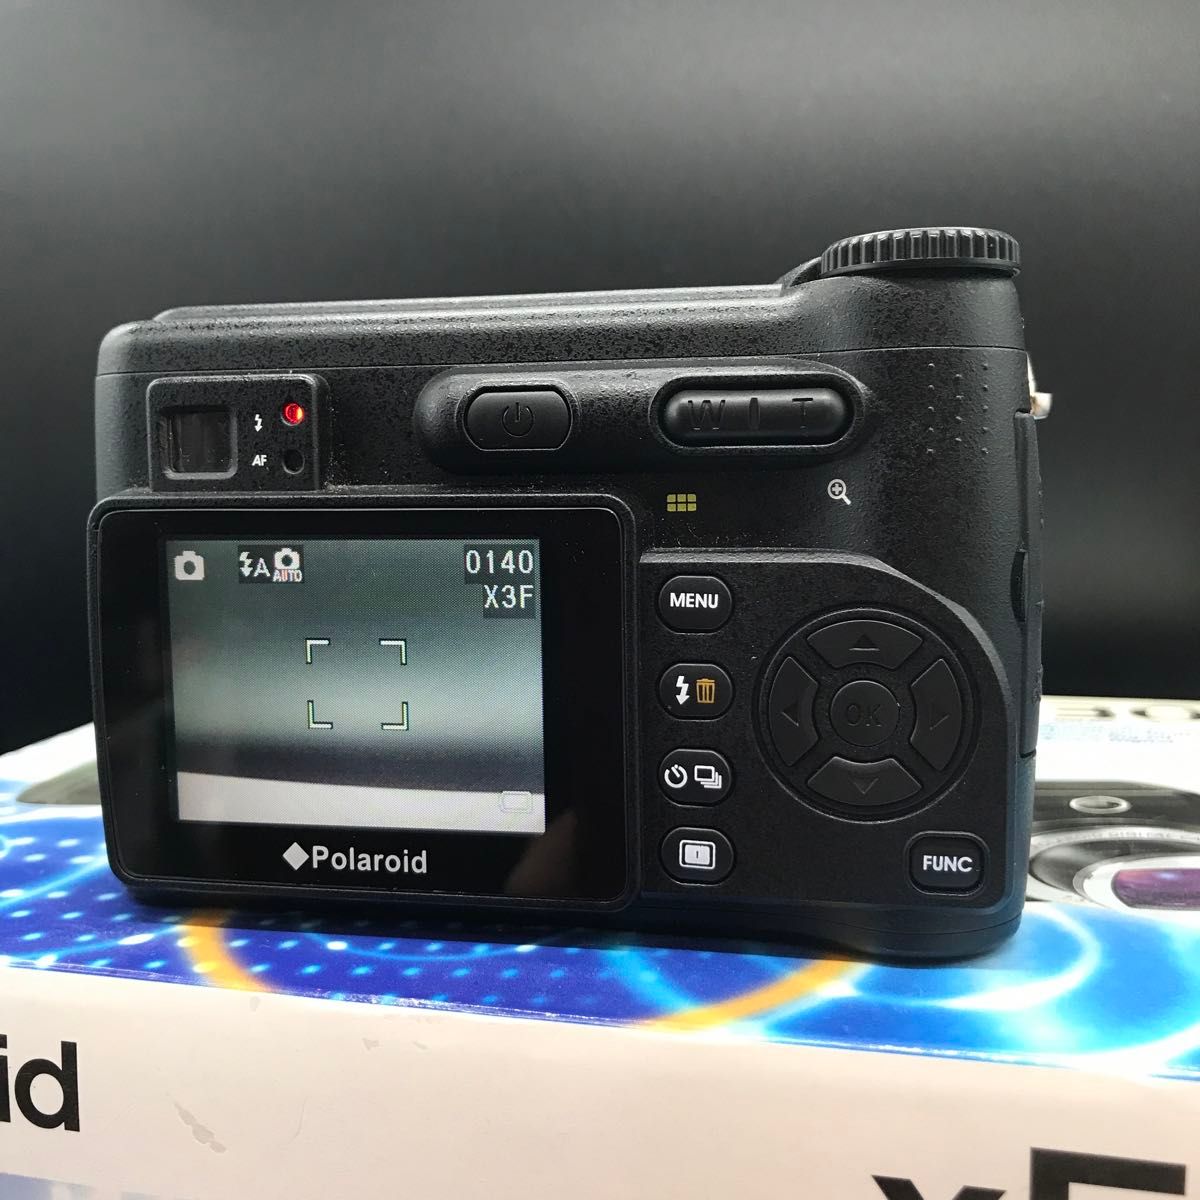 Polaroid X530 Foveonセンサーデジタルカメラ コンパクト ポラロイド SIGMA